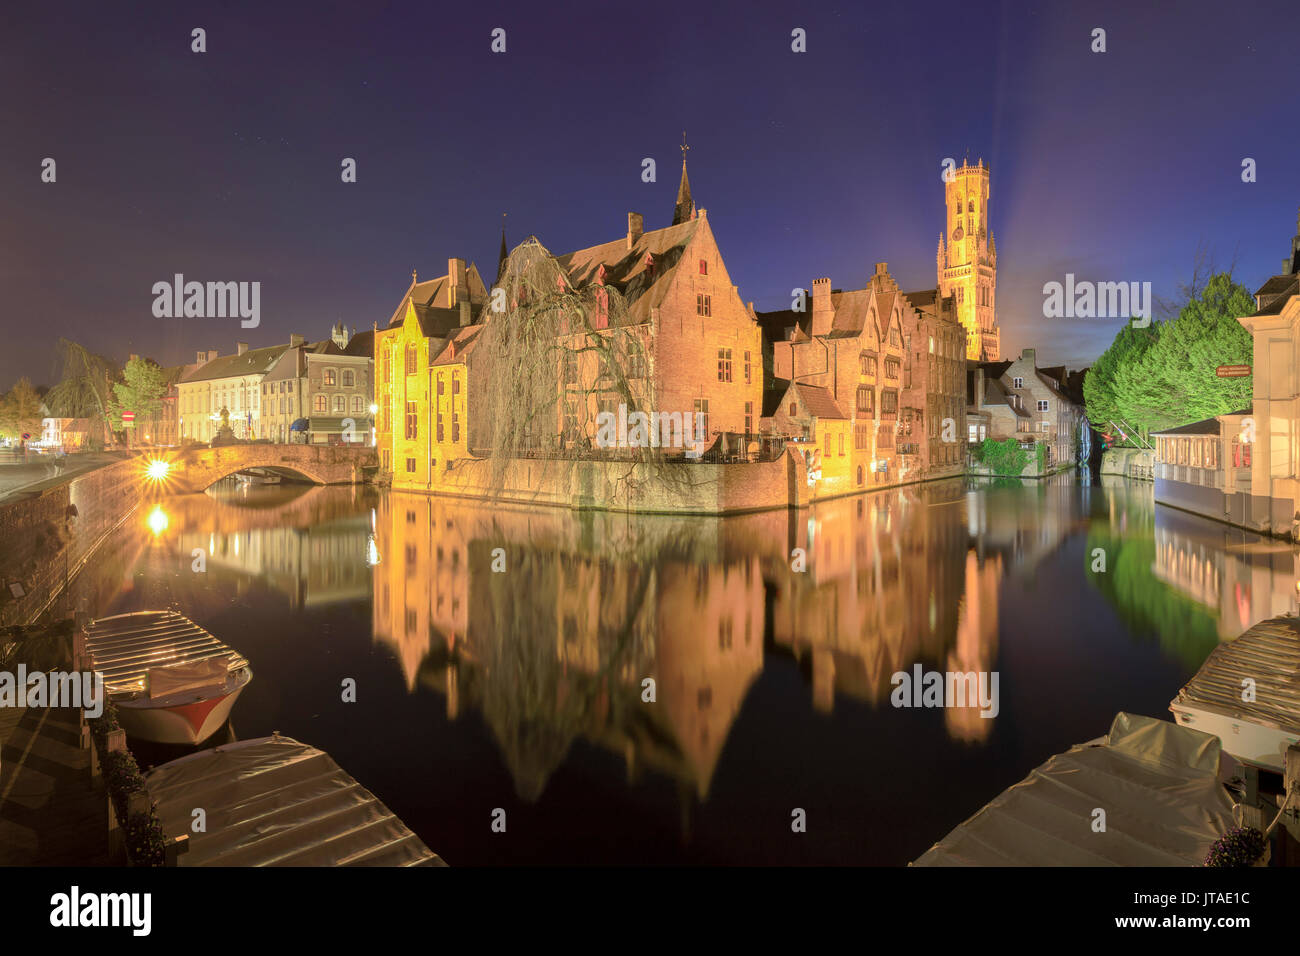 El centro medieval de la ciudad, declarado Patrimonio de la Humanidad por la UNESCO, enmarcadas por Rozenhoedkaai canal por la noche, brujas, Flandes Occidental, Bélgica, Europa Foto de stock